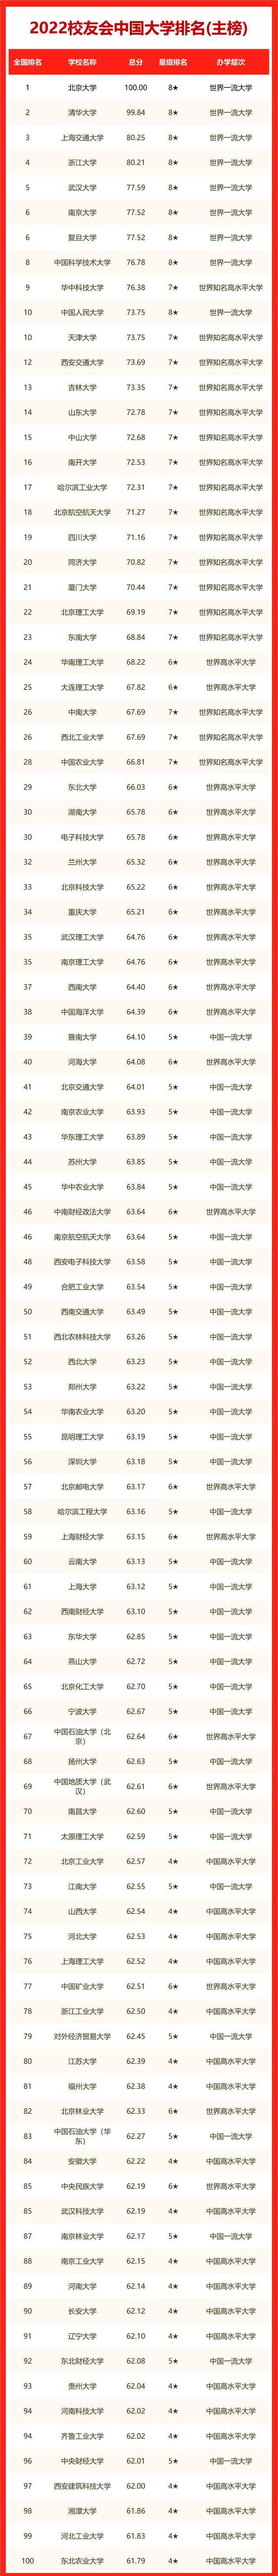 中国大学排名最新排名表-中国大学世界排名2023